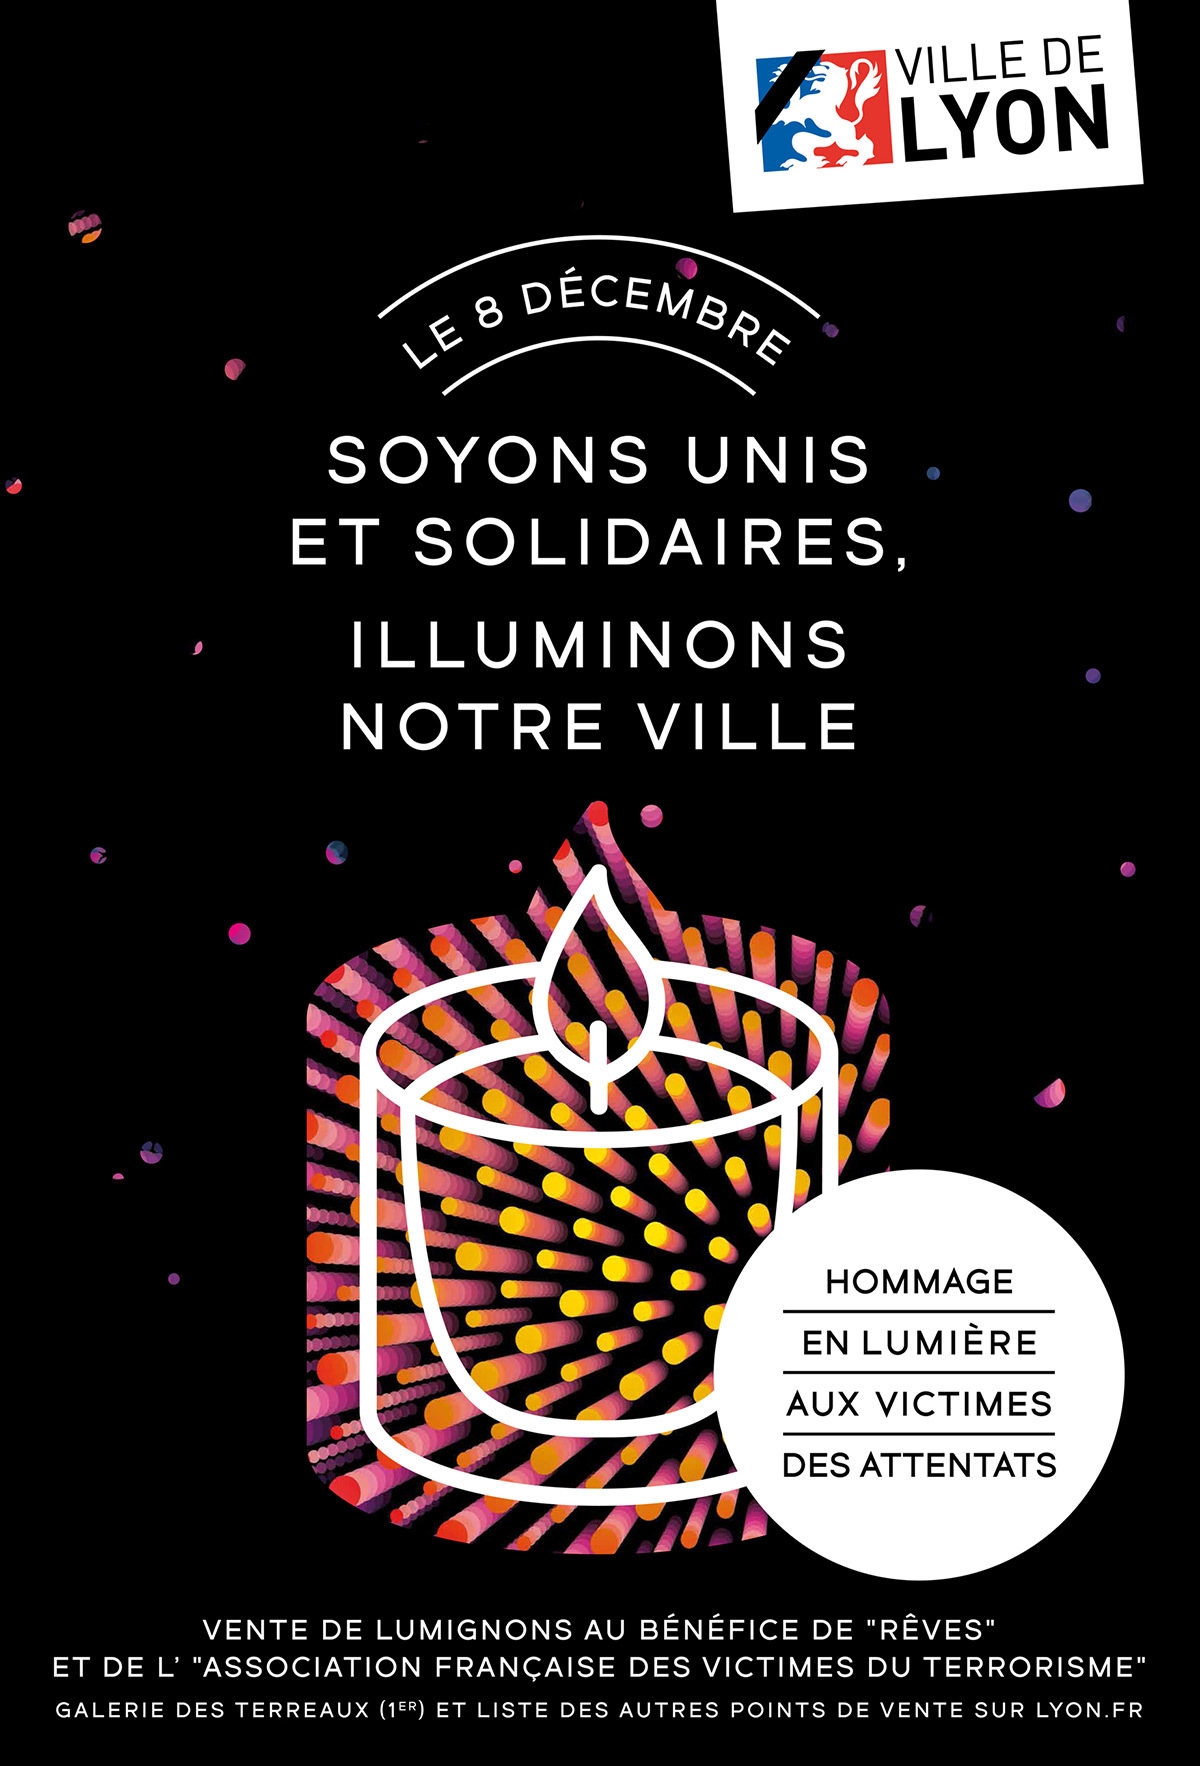 Fete-des-lumieres-2015---Hommage--victimes-Paris-8-decembre-lumignons---affiche-portrait